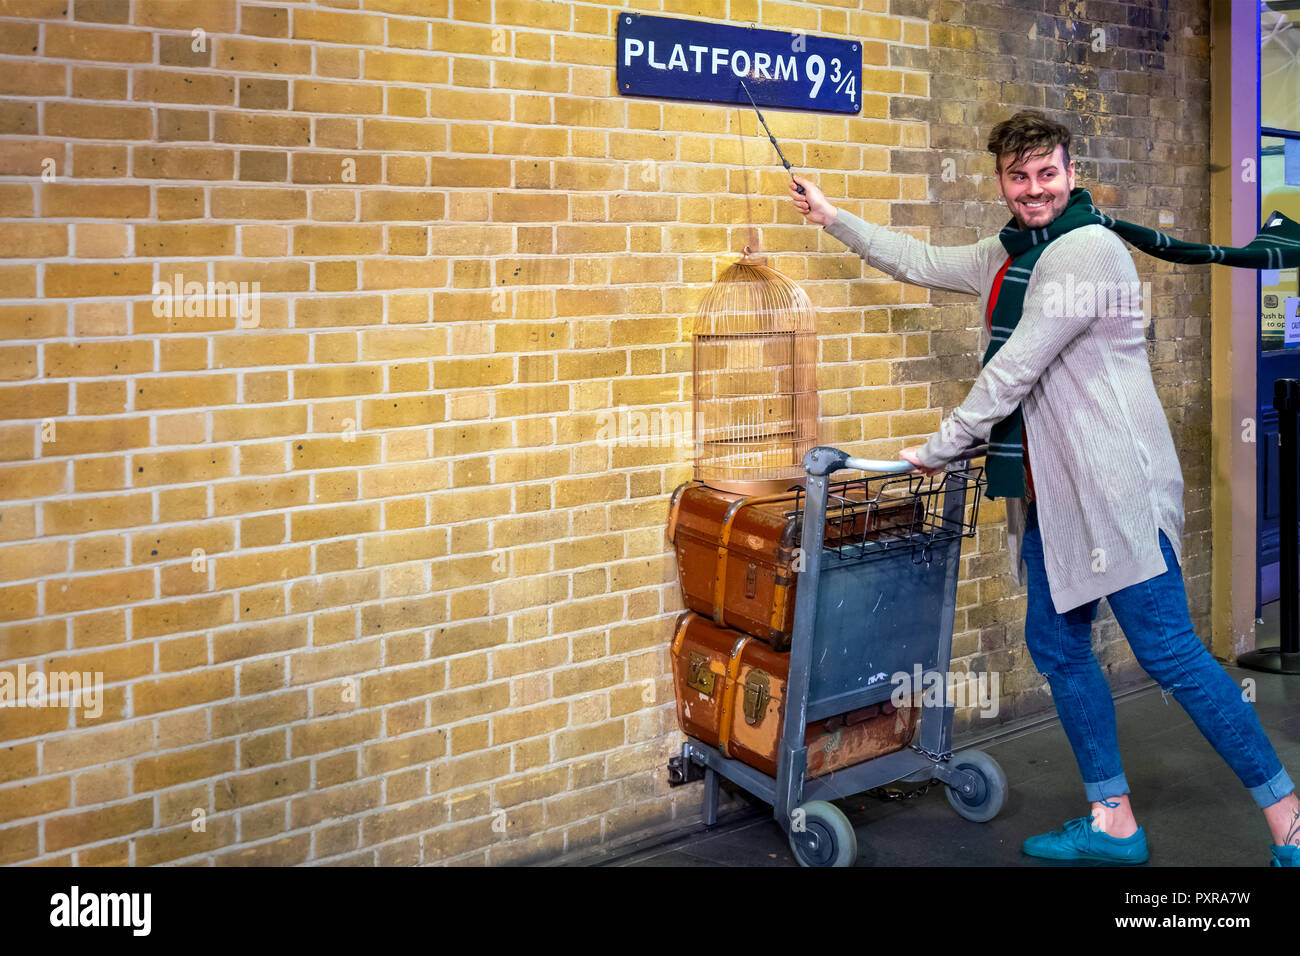 Londres, Royaume-Uni - 12 mai 2018 : des personnes non identifiées, pose à la plate-forme 9 3/4 par la prise de film Harry Potter à King's Cross station Banque D'Images